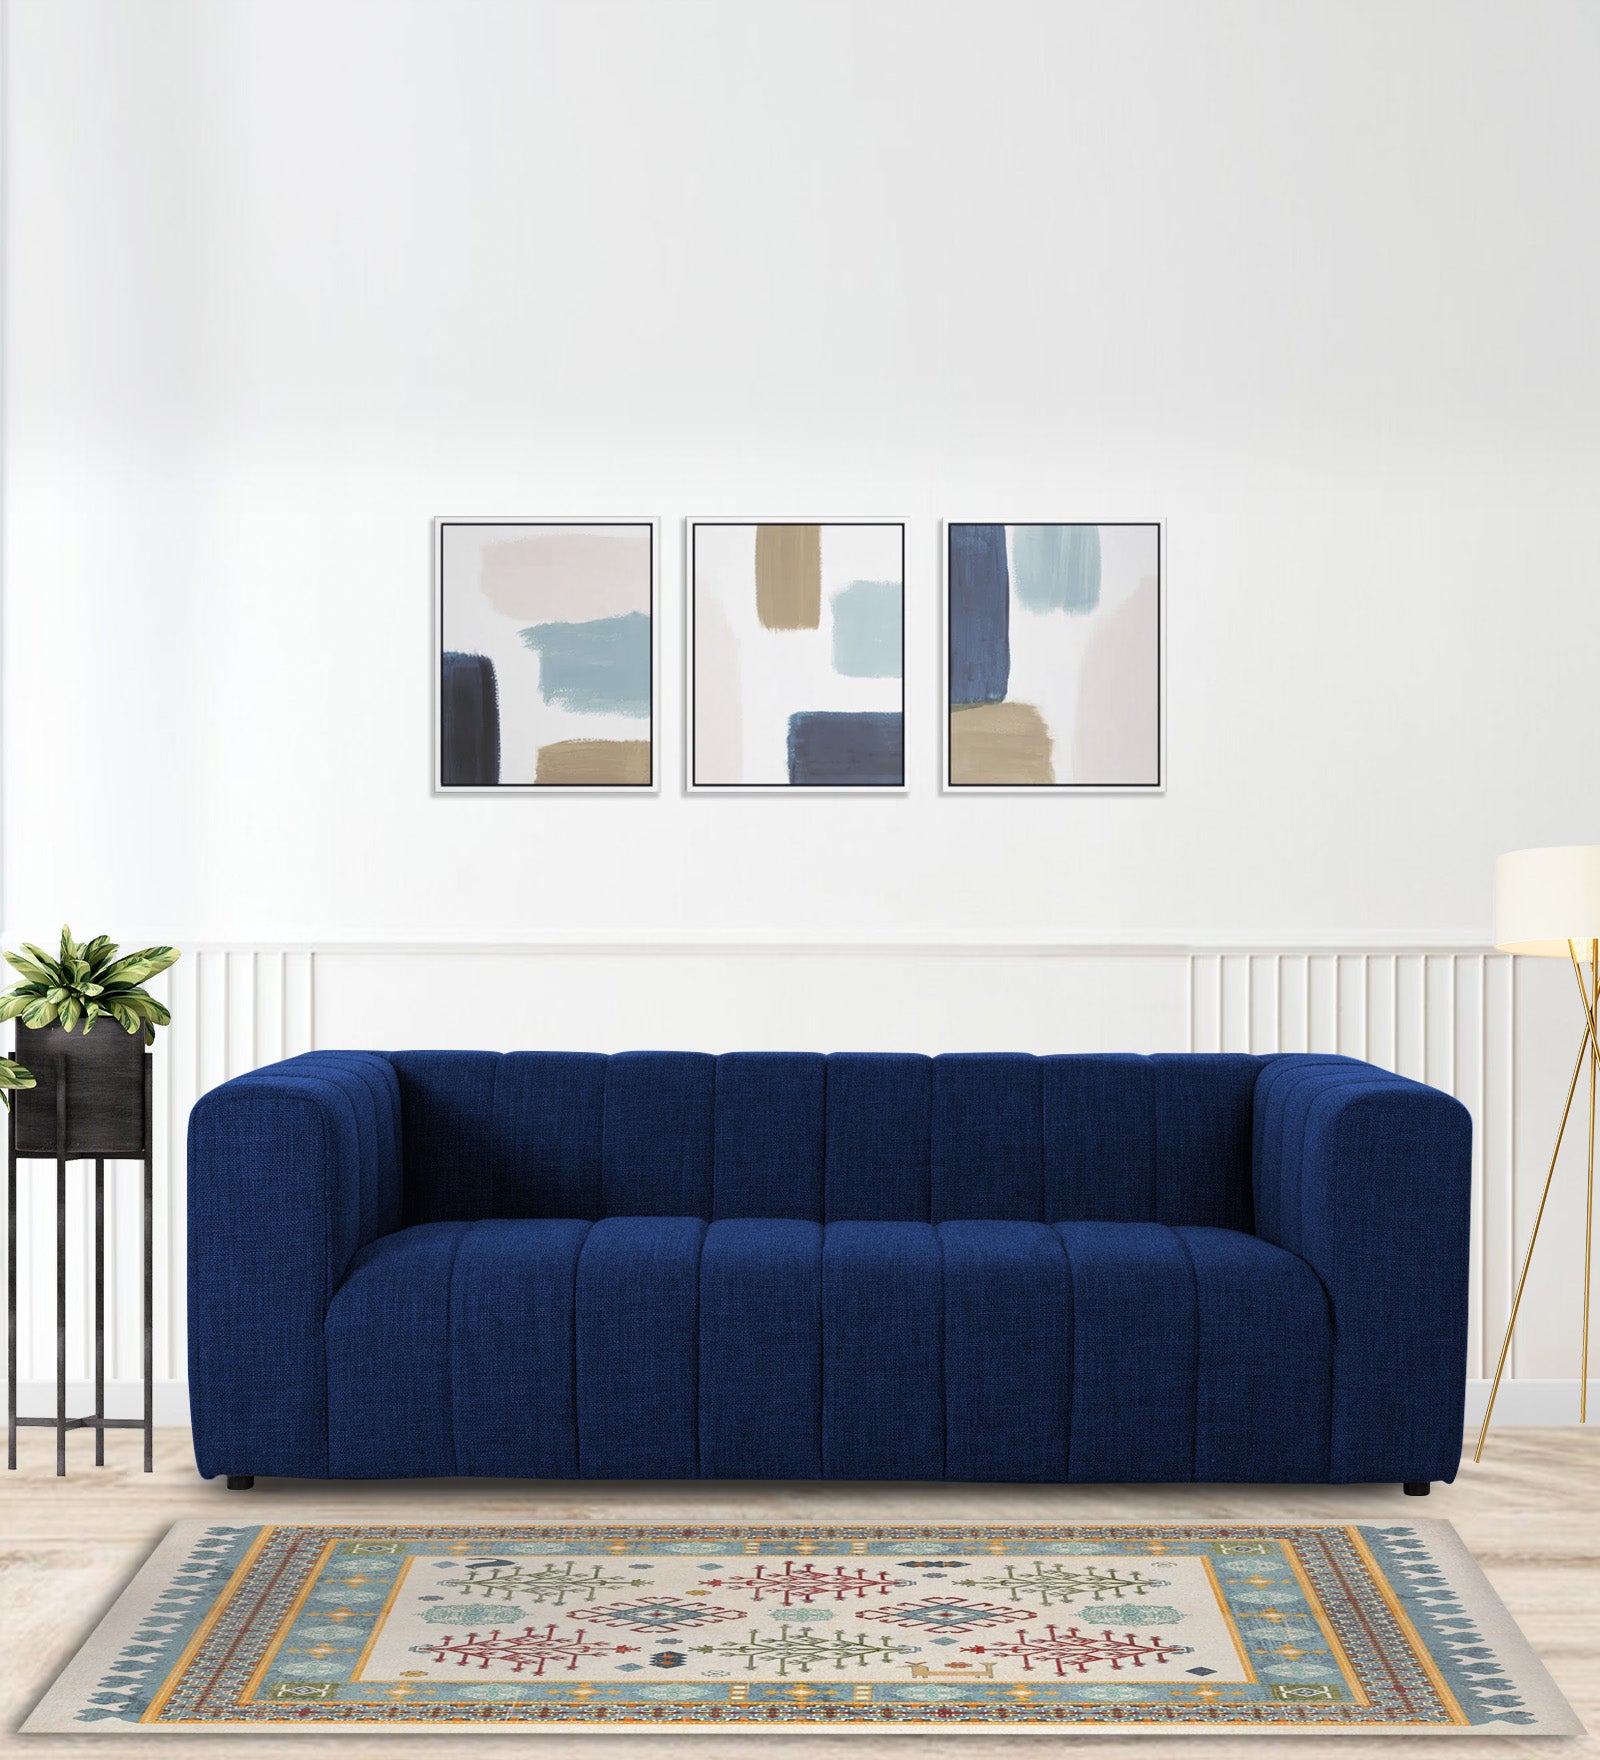 Lara Fabric 3 Seater Sofa in Royal Blue Colour